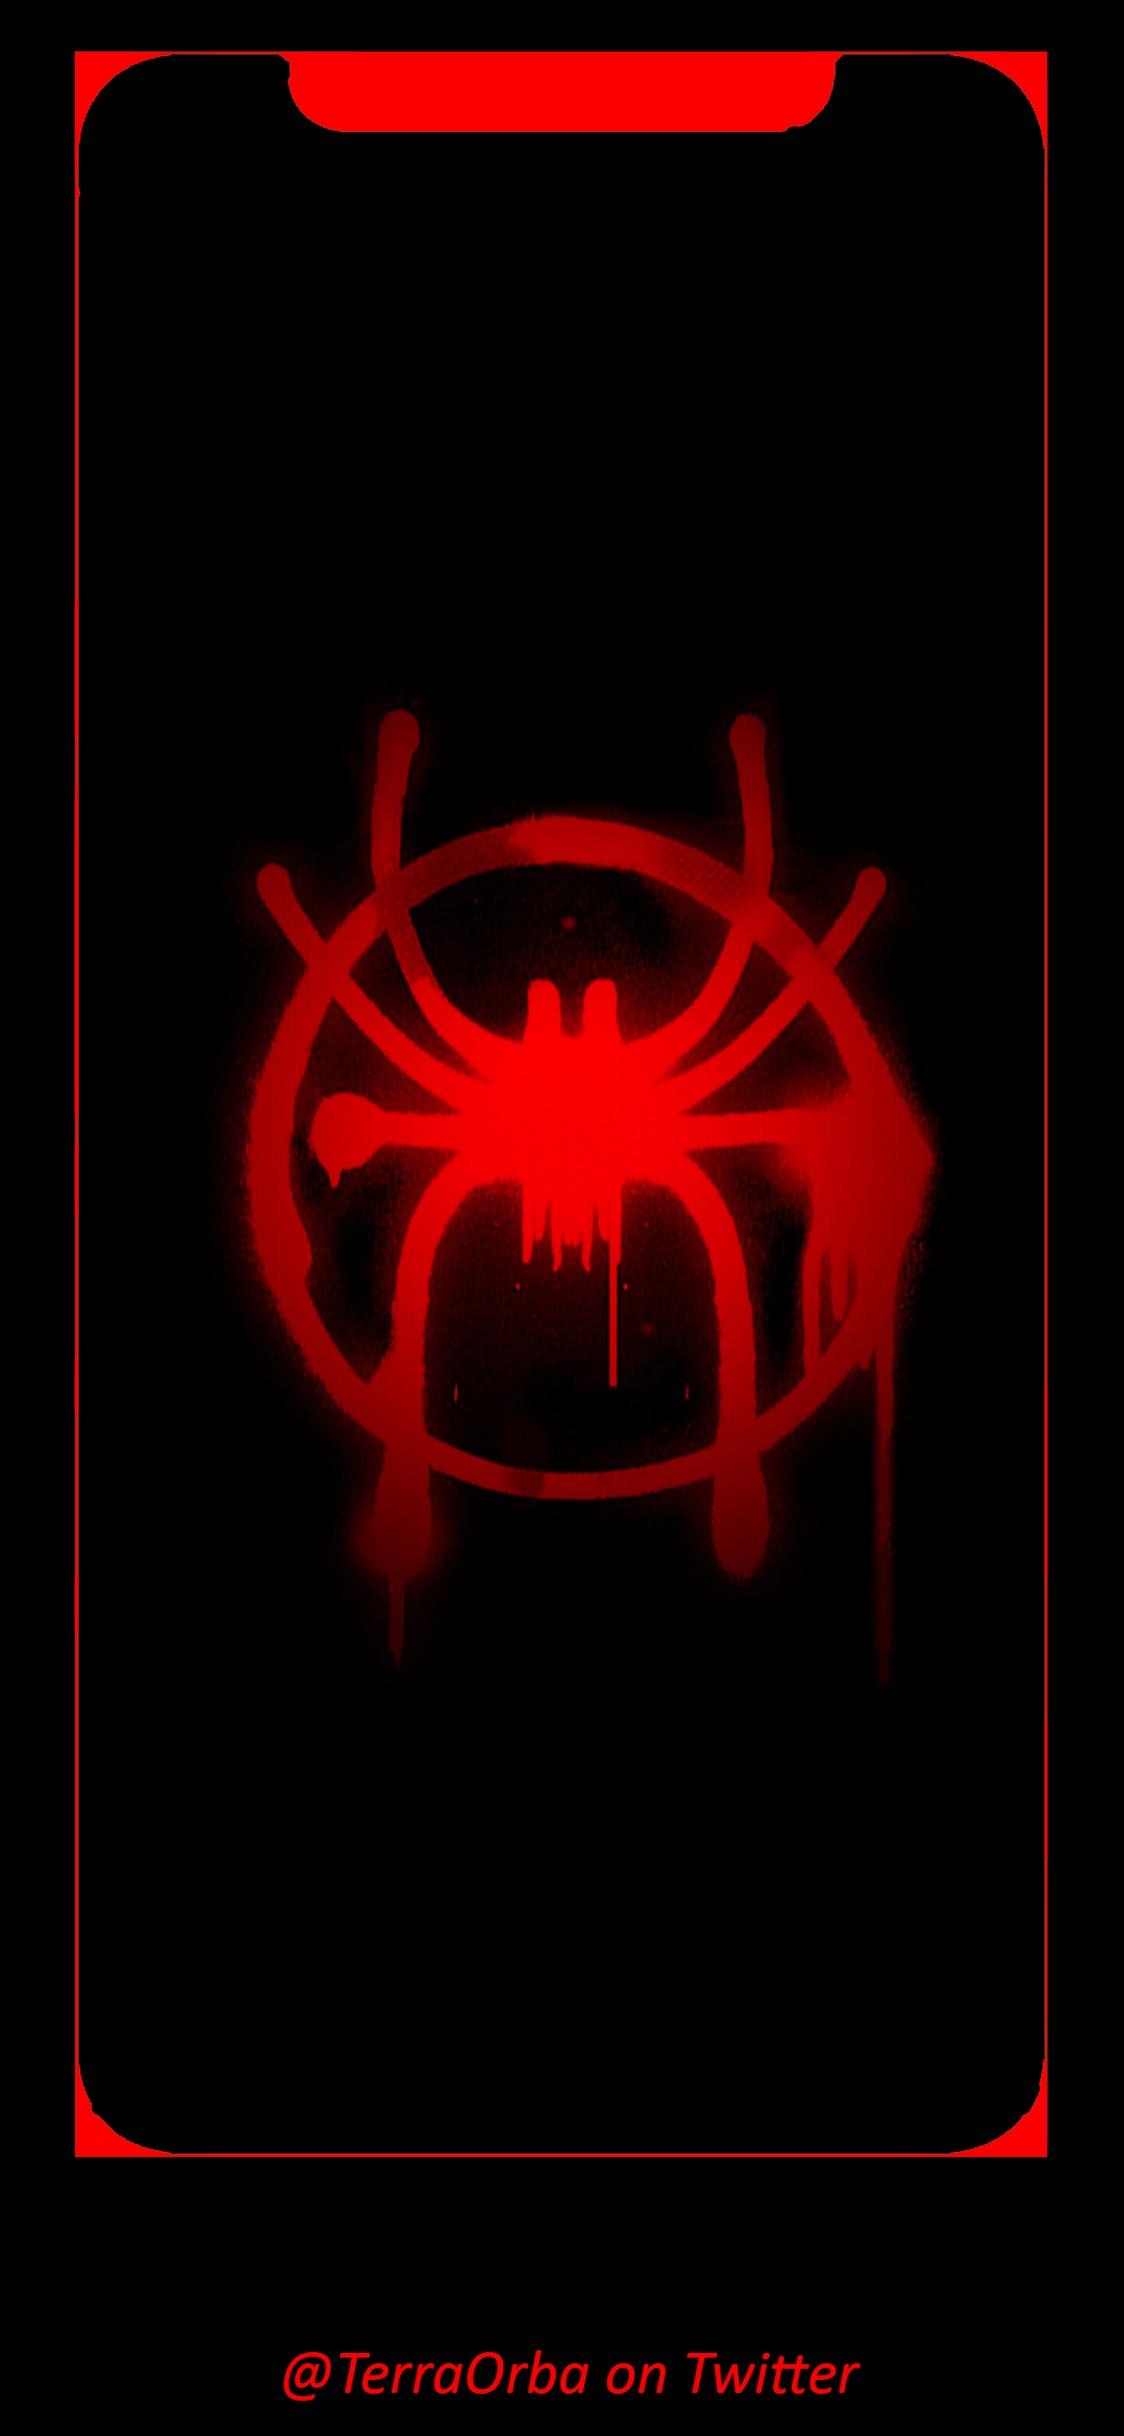 Spider Verse IPhone X Wallpaper. Enjoy!